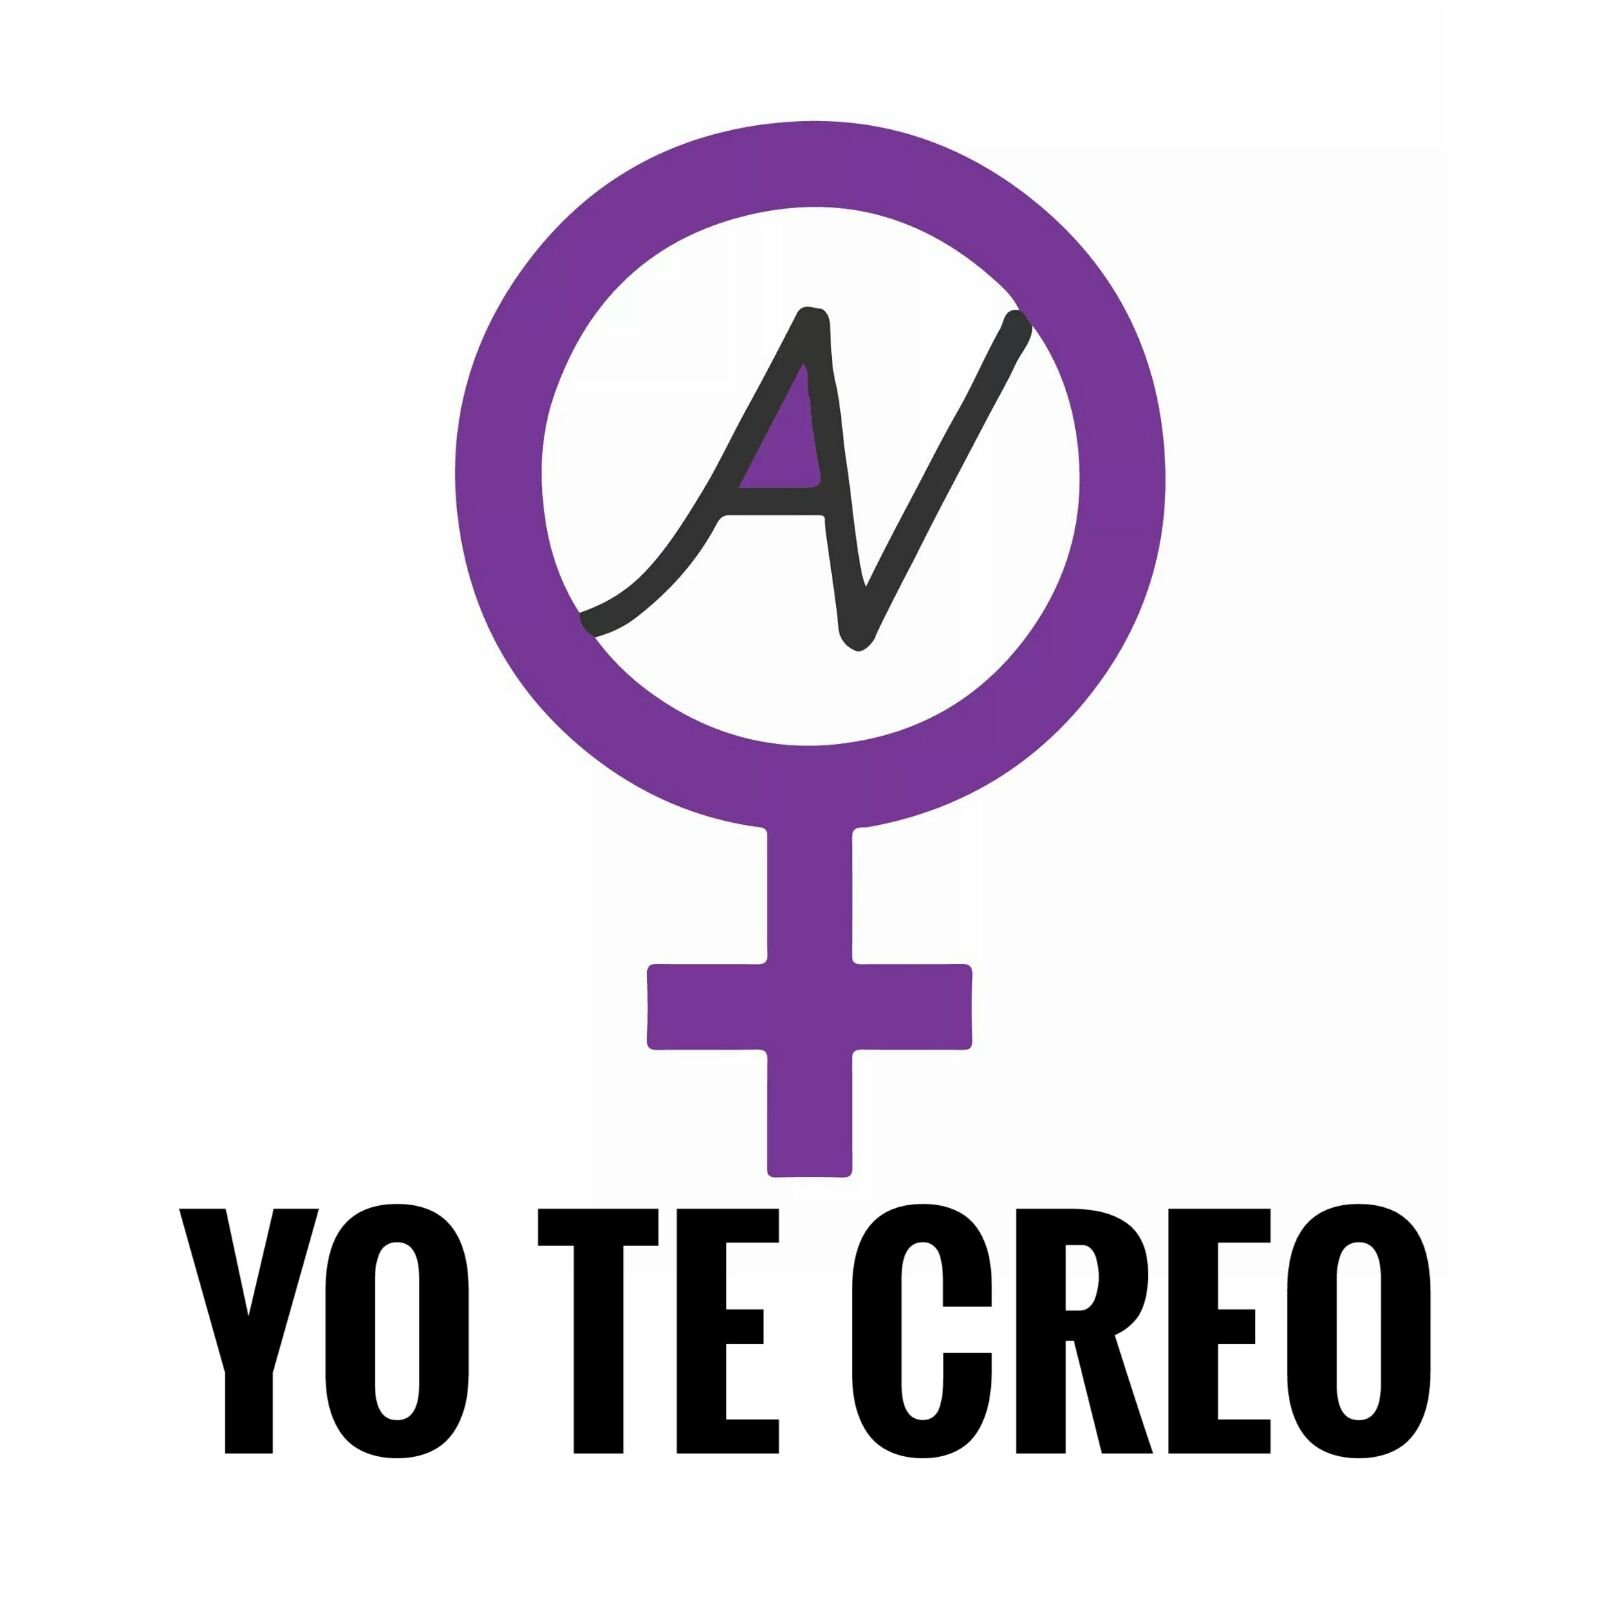 Frente feminista de Albacete, ocupamos cuestiones patriarcales, mujer y LGTB. Contacto: accionvioletaAB@gmail.com